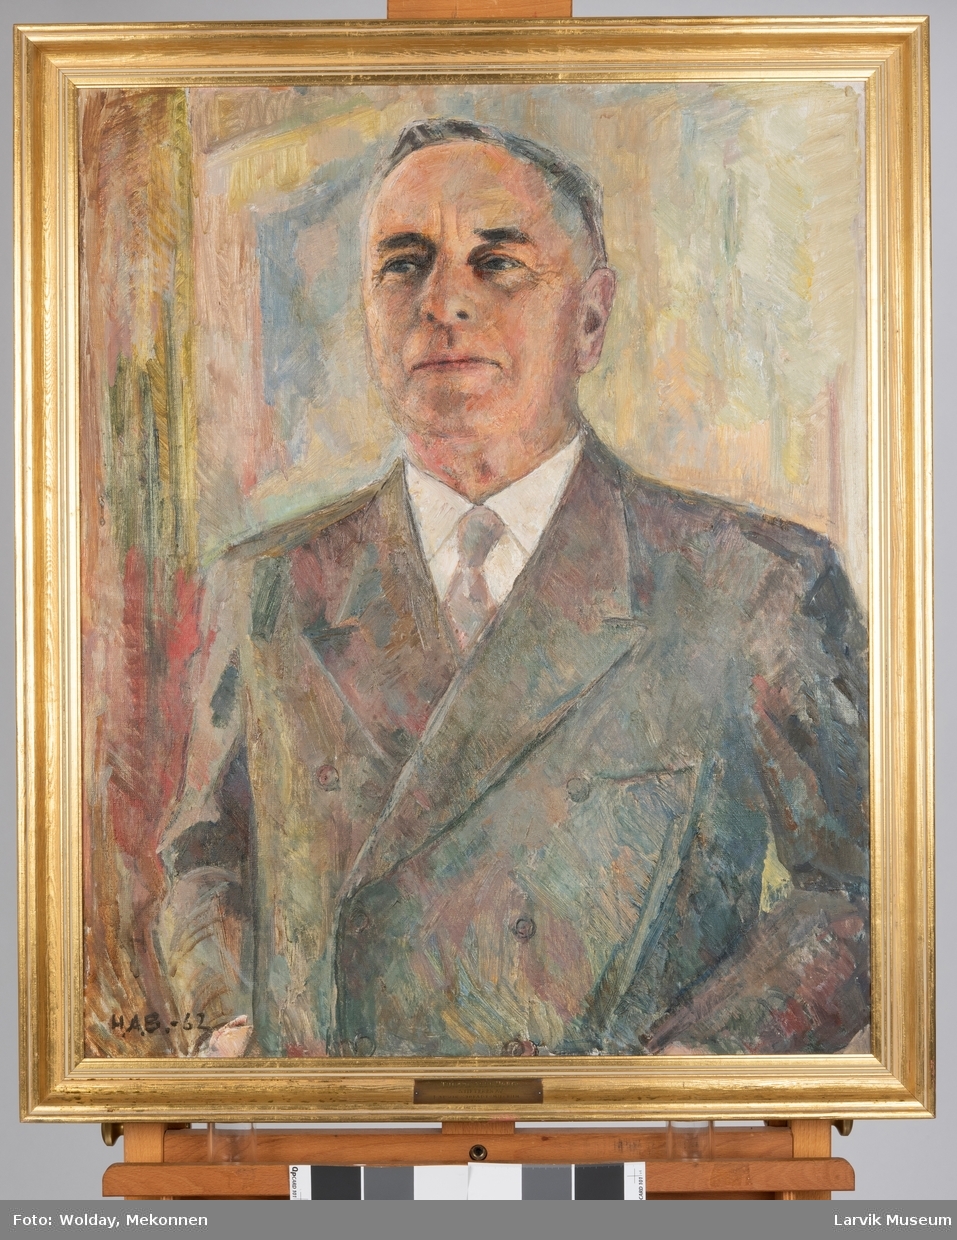 Høeg, Thomas Arbo (1894 - 1970)